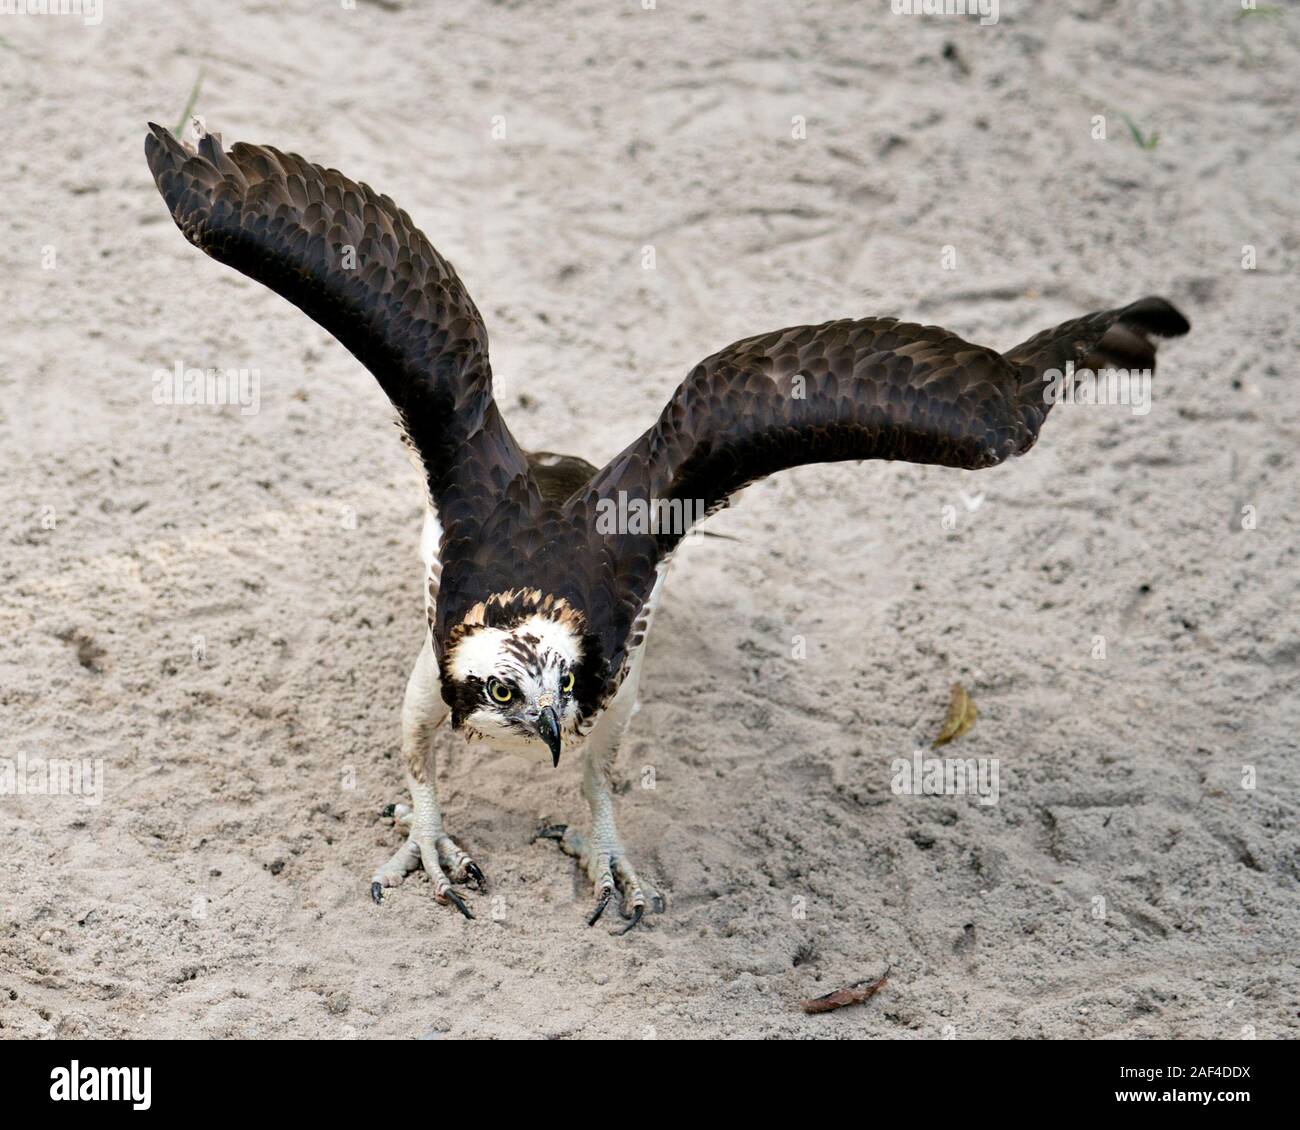 Osprey Vogel in der Nähe Profil ansehen Flügeln, die an der Kamera mit Sand Hintergrund Vordergrund anzeigen ihrer braunen Gefieder Kopf suchen, talons in seiner Stockfoto